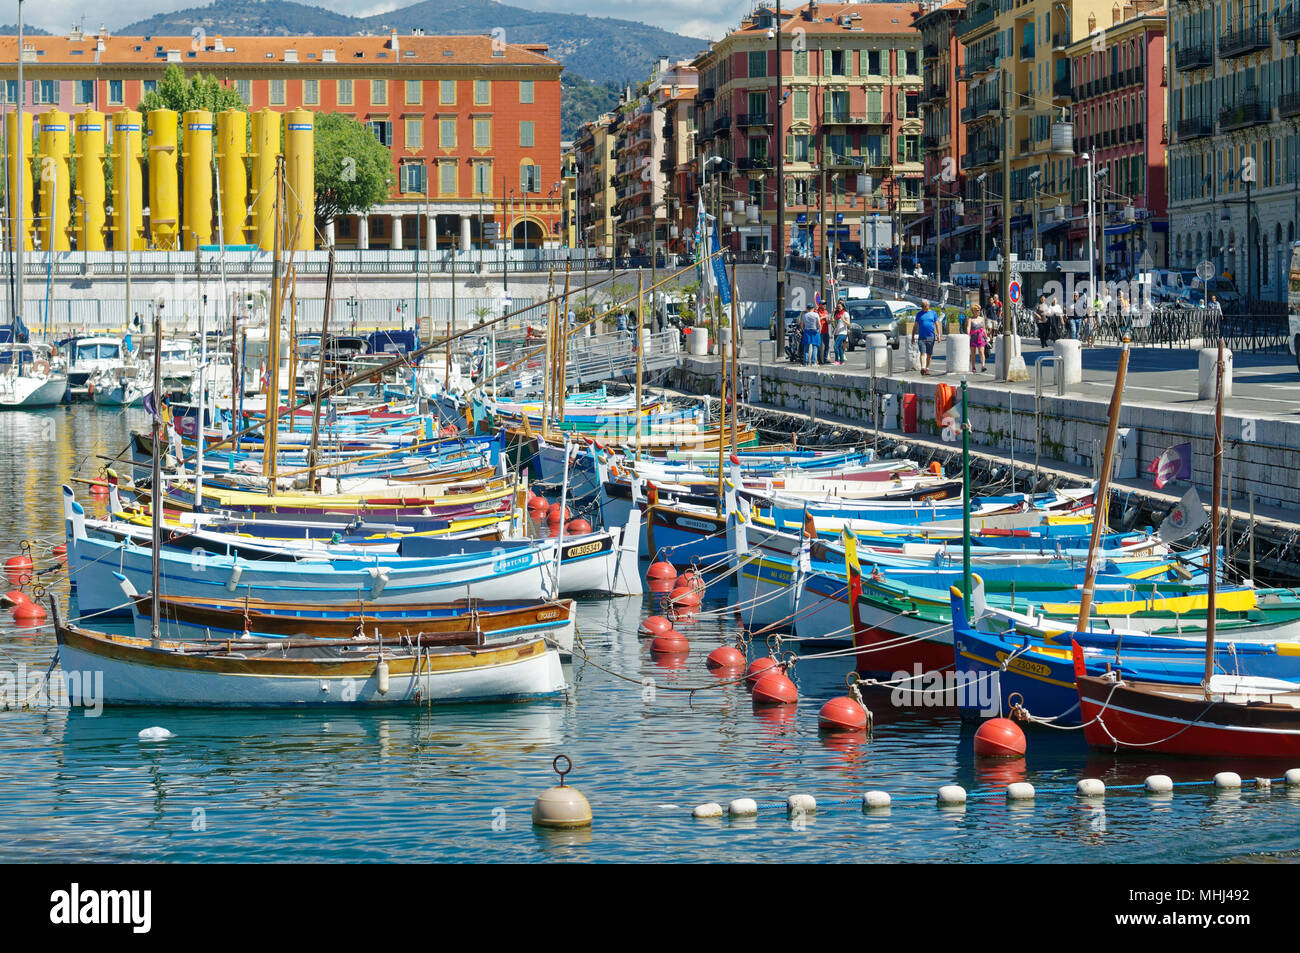 Piccolo di legno colorate barche da pesca denominato Pointus ormeggiata in porto vecchio di Nizza Costa Azzurra, Francia Foto Stock